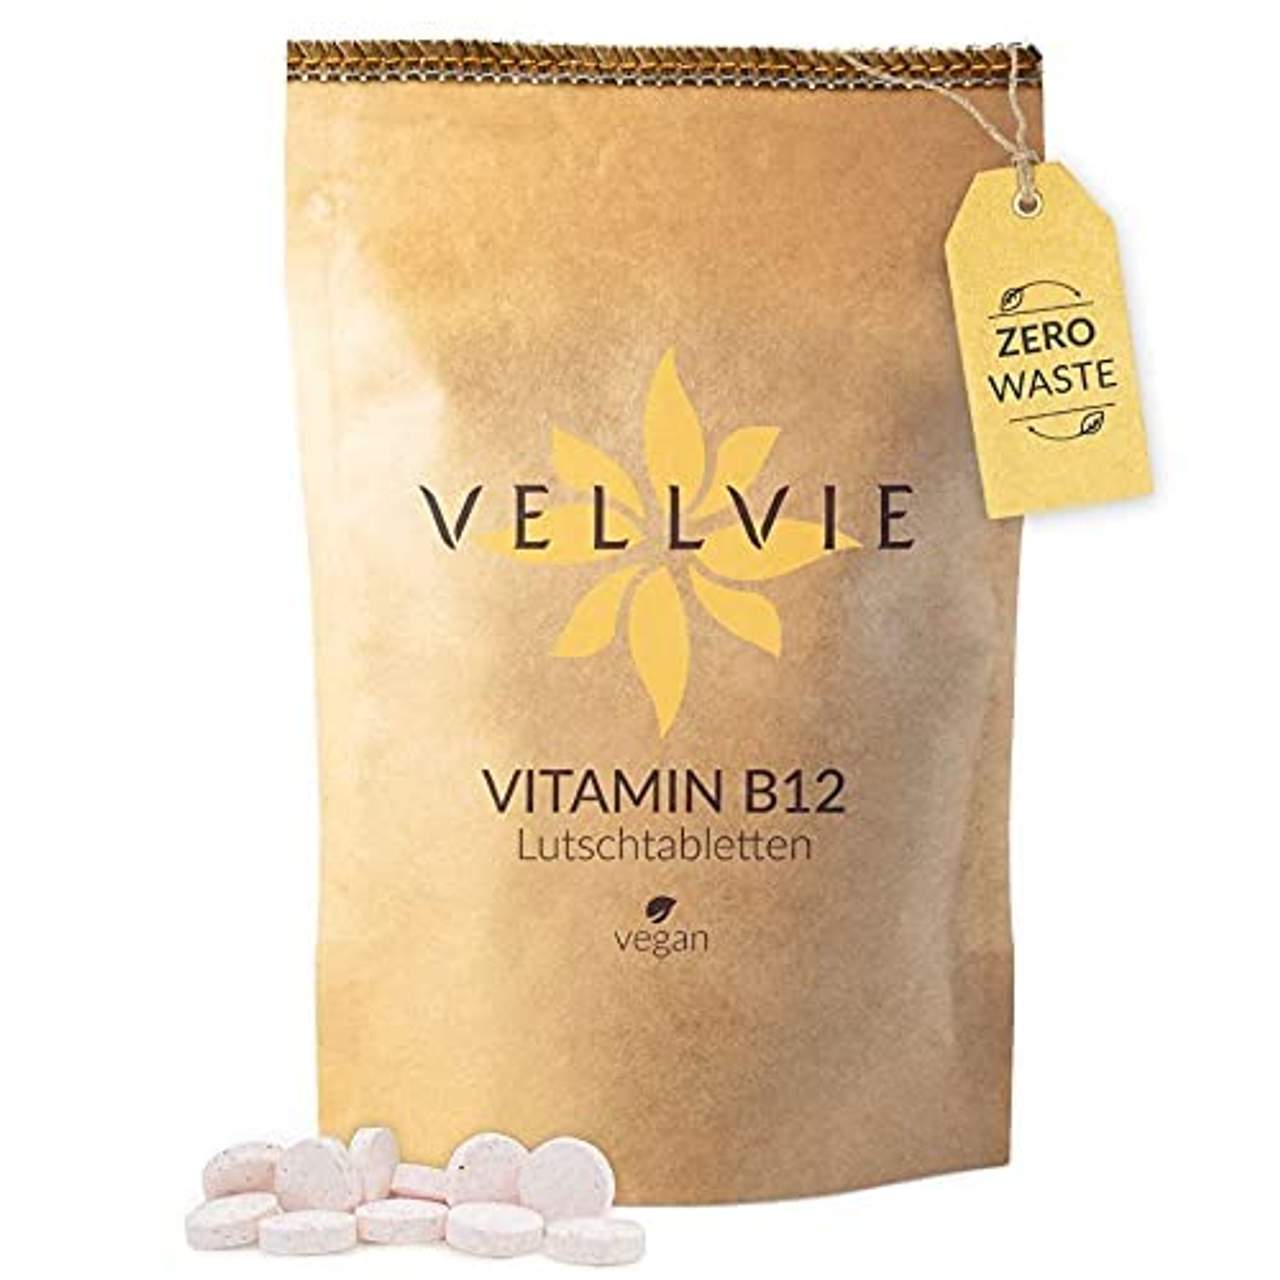 Vitamin B12 Lutschtabletten Zero Waste & Plastikfrei von VELLVIE